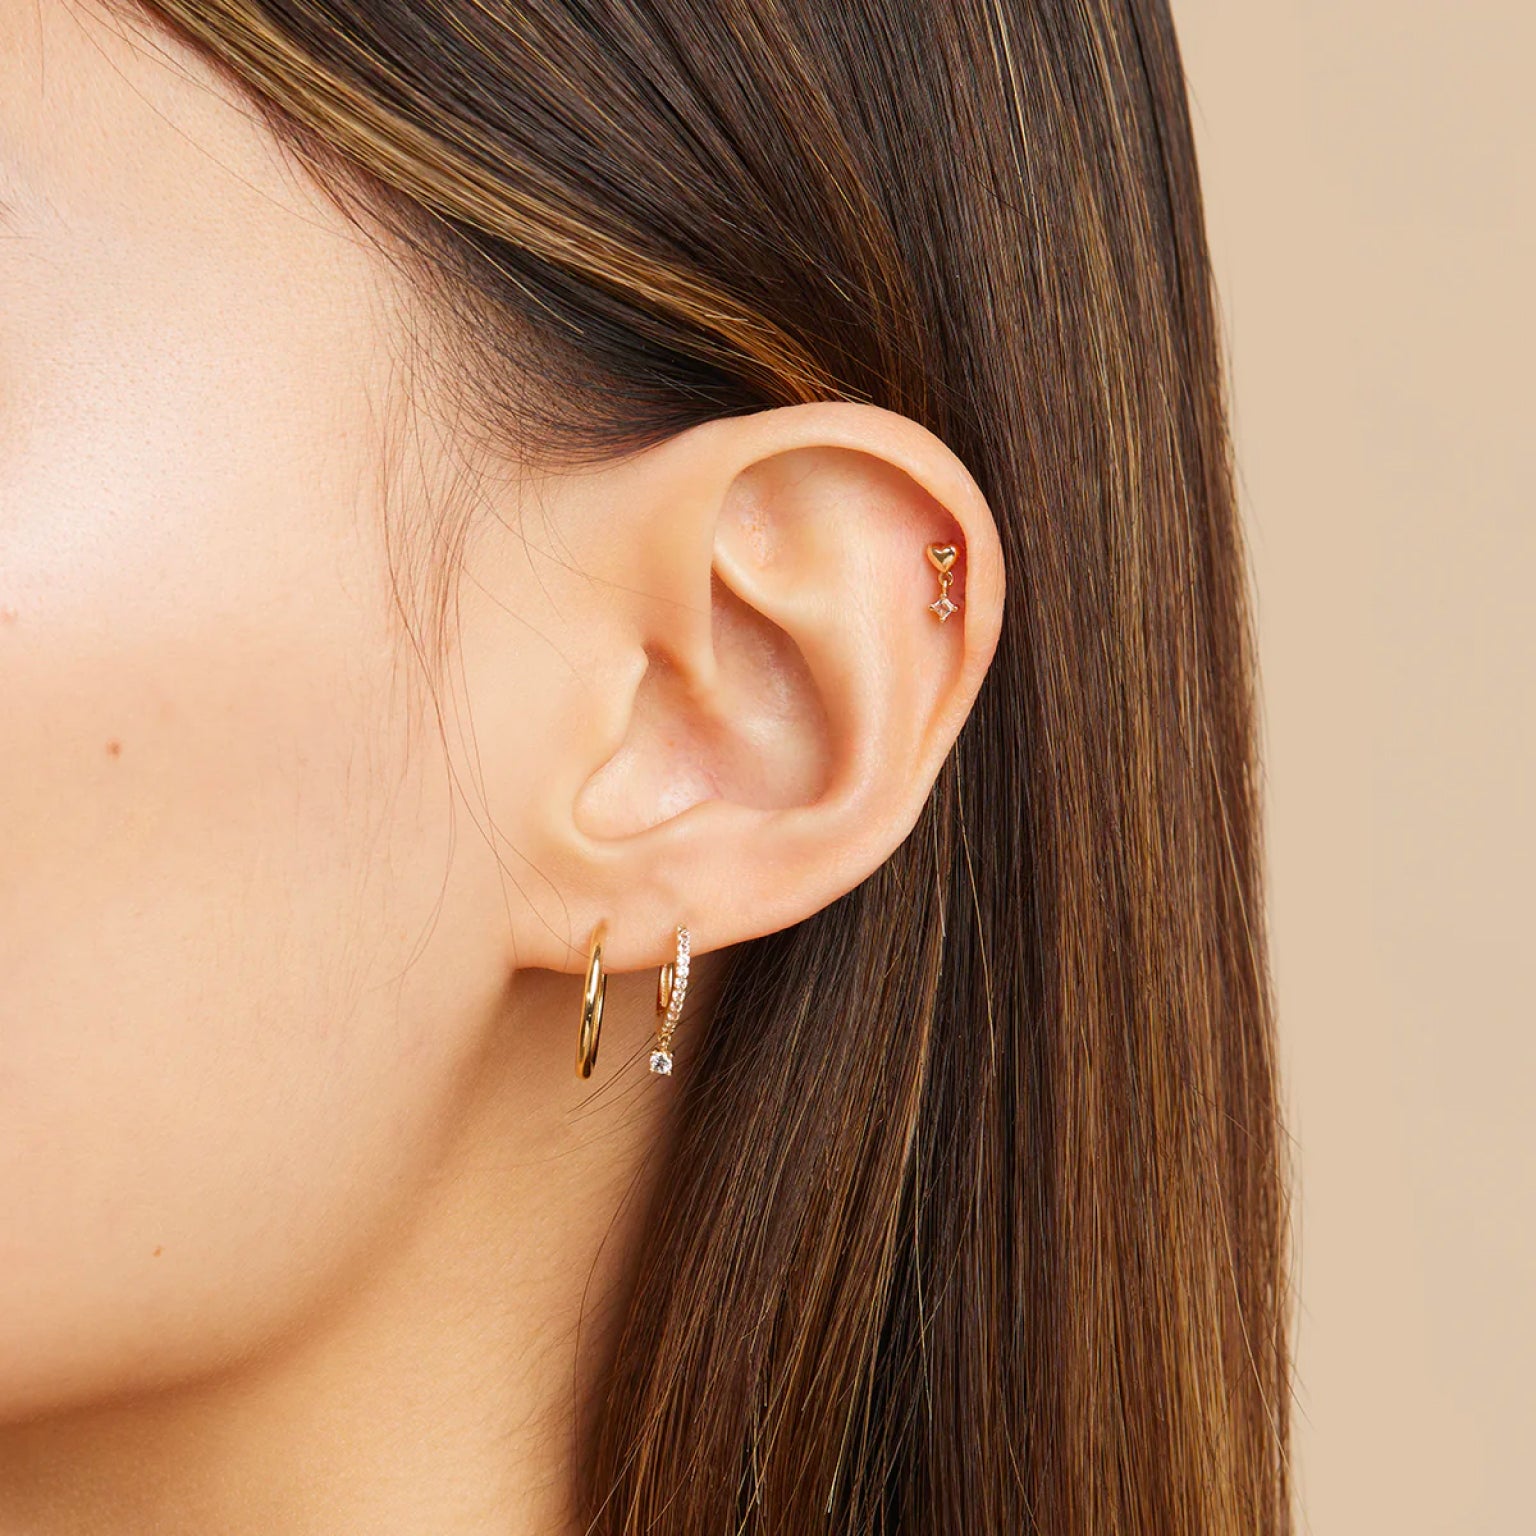 Sapphire Cartilage Hoop Earring, Sapphire Cz Helix Hoop, Blue Stone Hoop  Earring, Gemstone Hoop Earring - Etsy | Helix piercing jewelry, Ear jewelry,  Gemstone hoop earrings